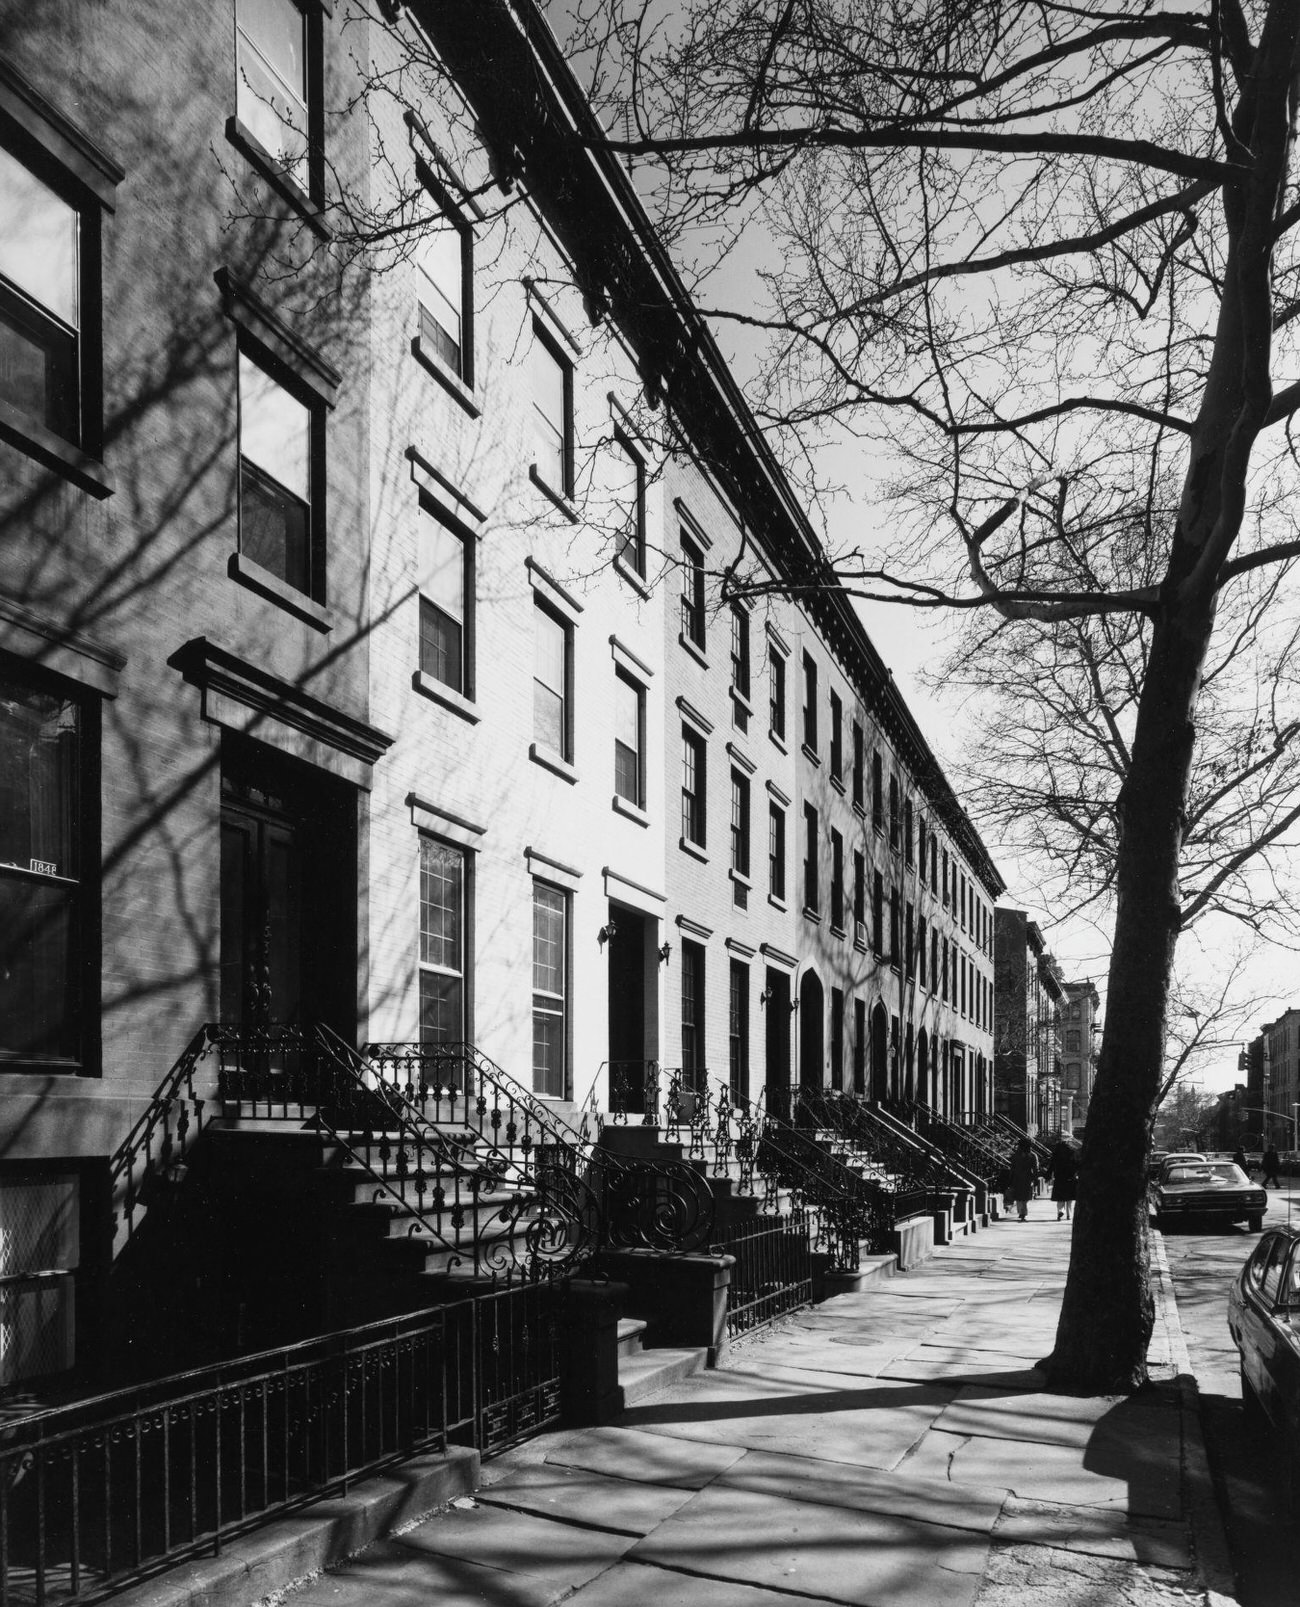 Southward View On Clinton Street From Schermerhorn Street, Brooklyn, 1977.